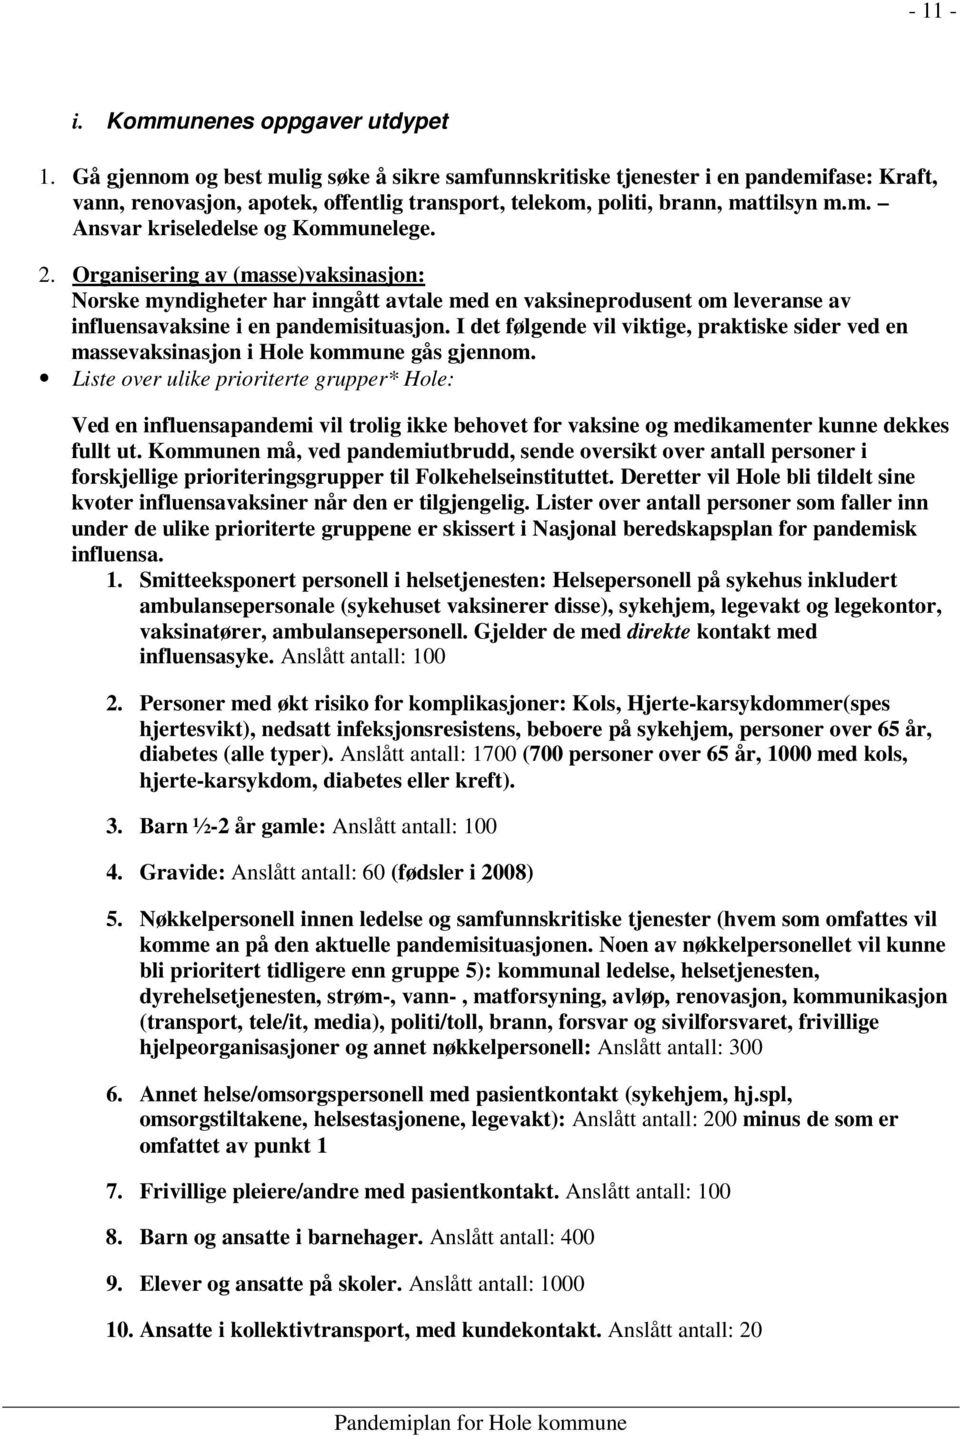 2. Organisering av (masse)vaksinasjon: Norske myndigheter har inngått avtale med en vaksineprodusent om leveranse av influensavaksine i en pandemisituasjon.